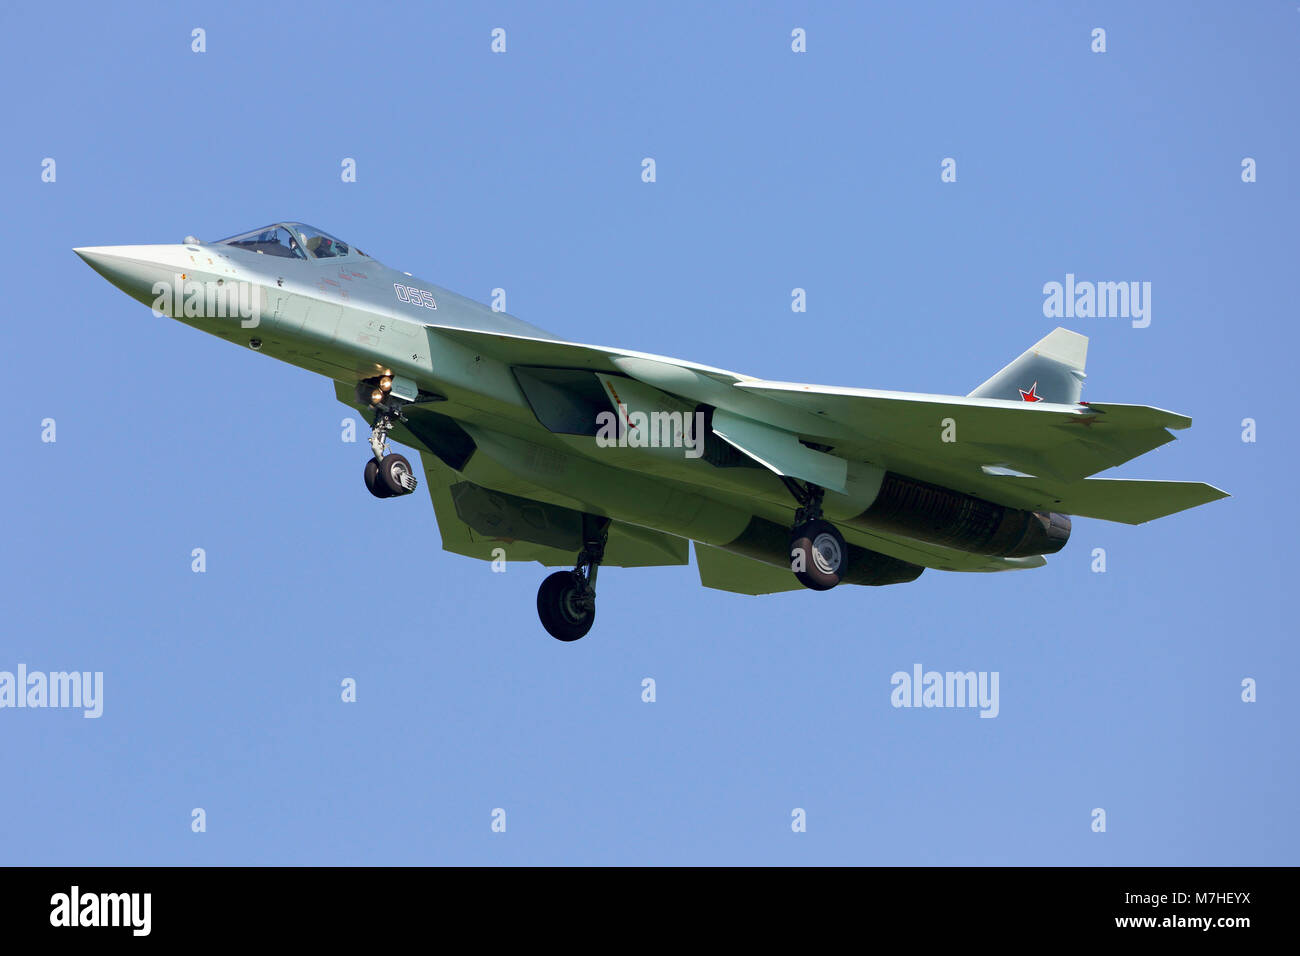 T-50 PAK-FA Russe de cinquième génération jet fighter landing Banque D'Images